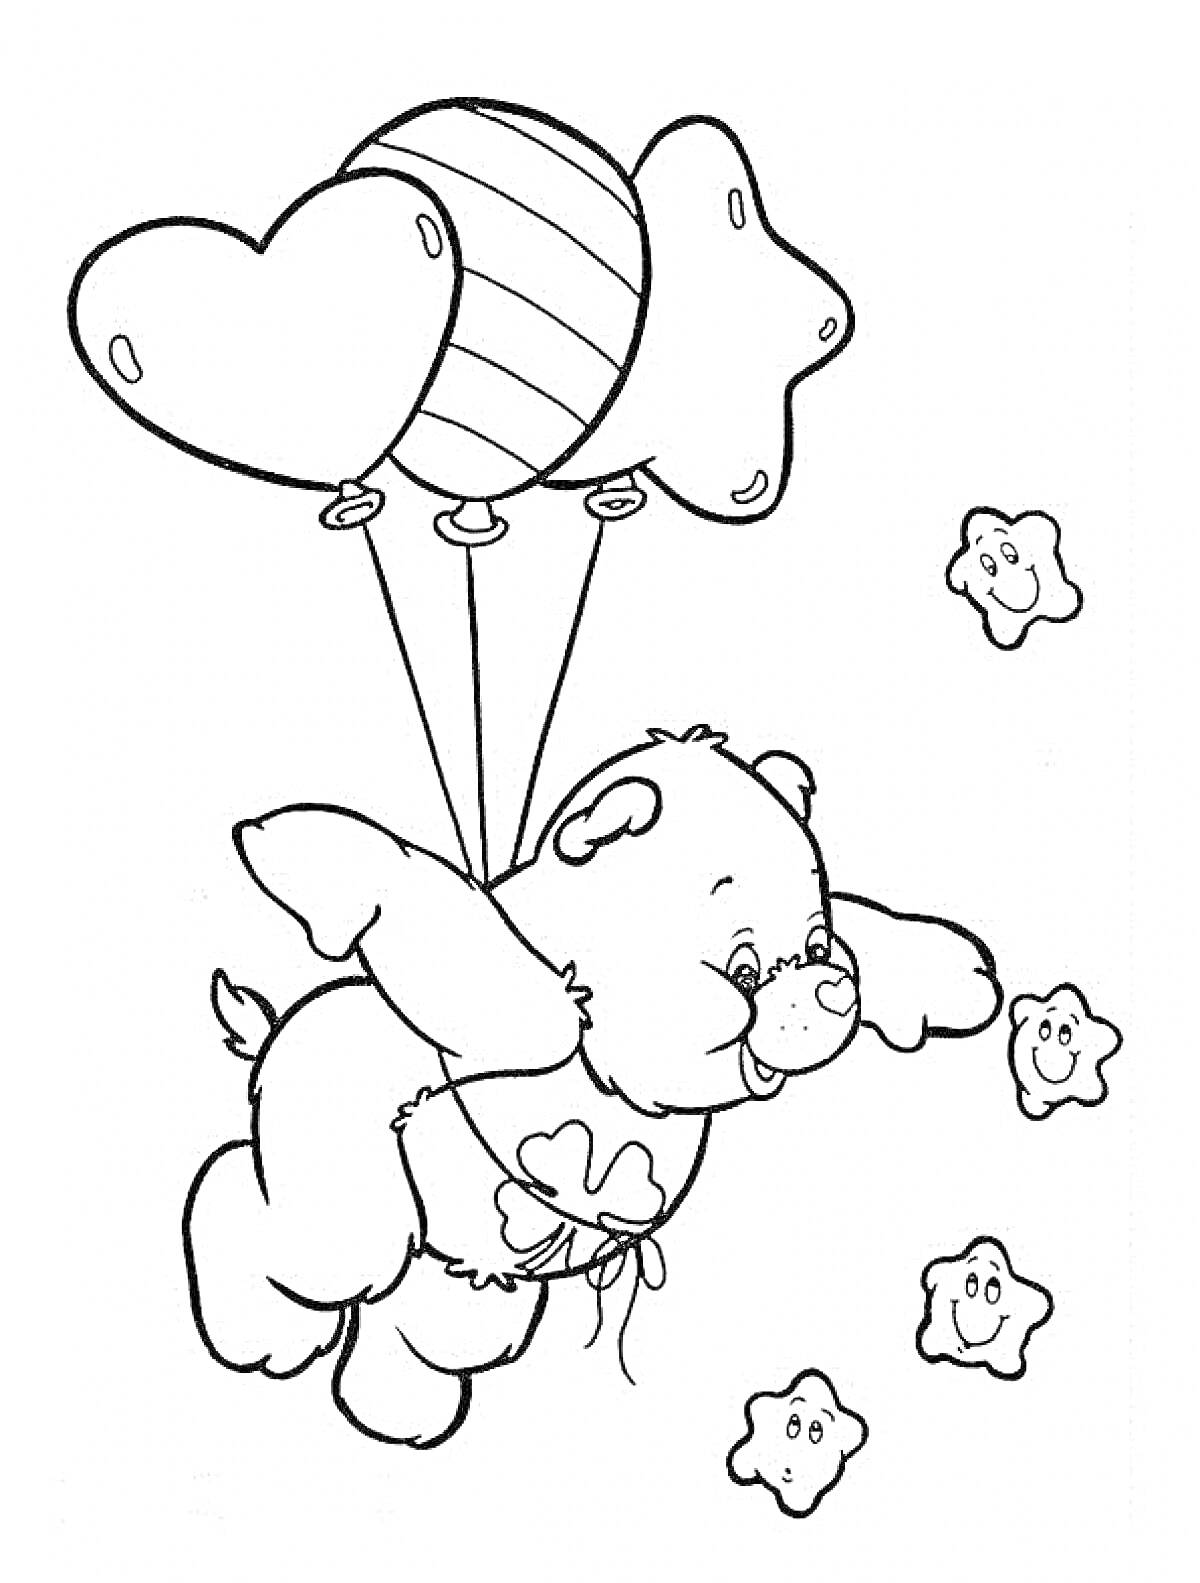 Раскраска Медвежонок летящий на трех воздушных шариках (два в форме сердца, один в форме звезды), с улыбающимися звёздами